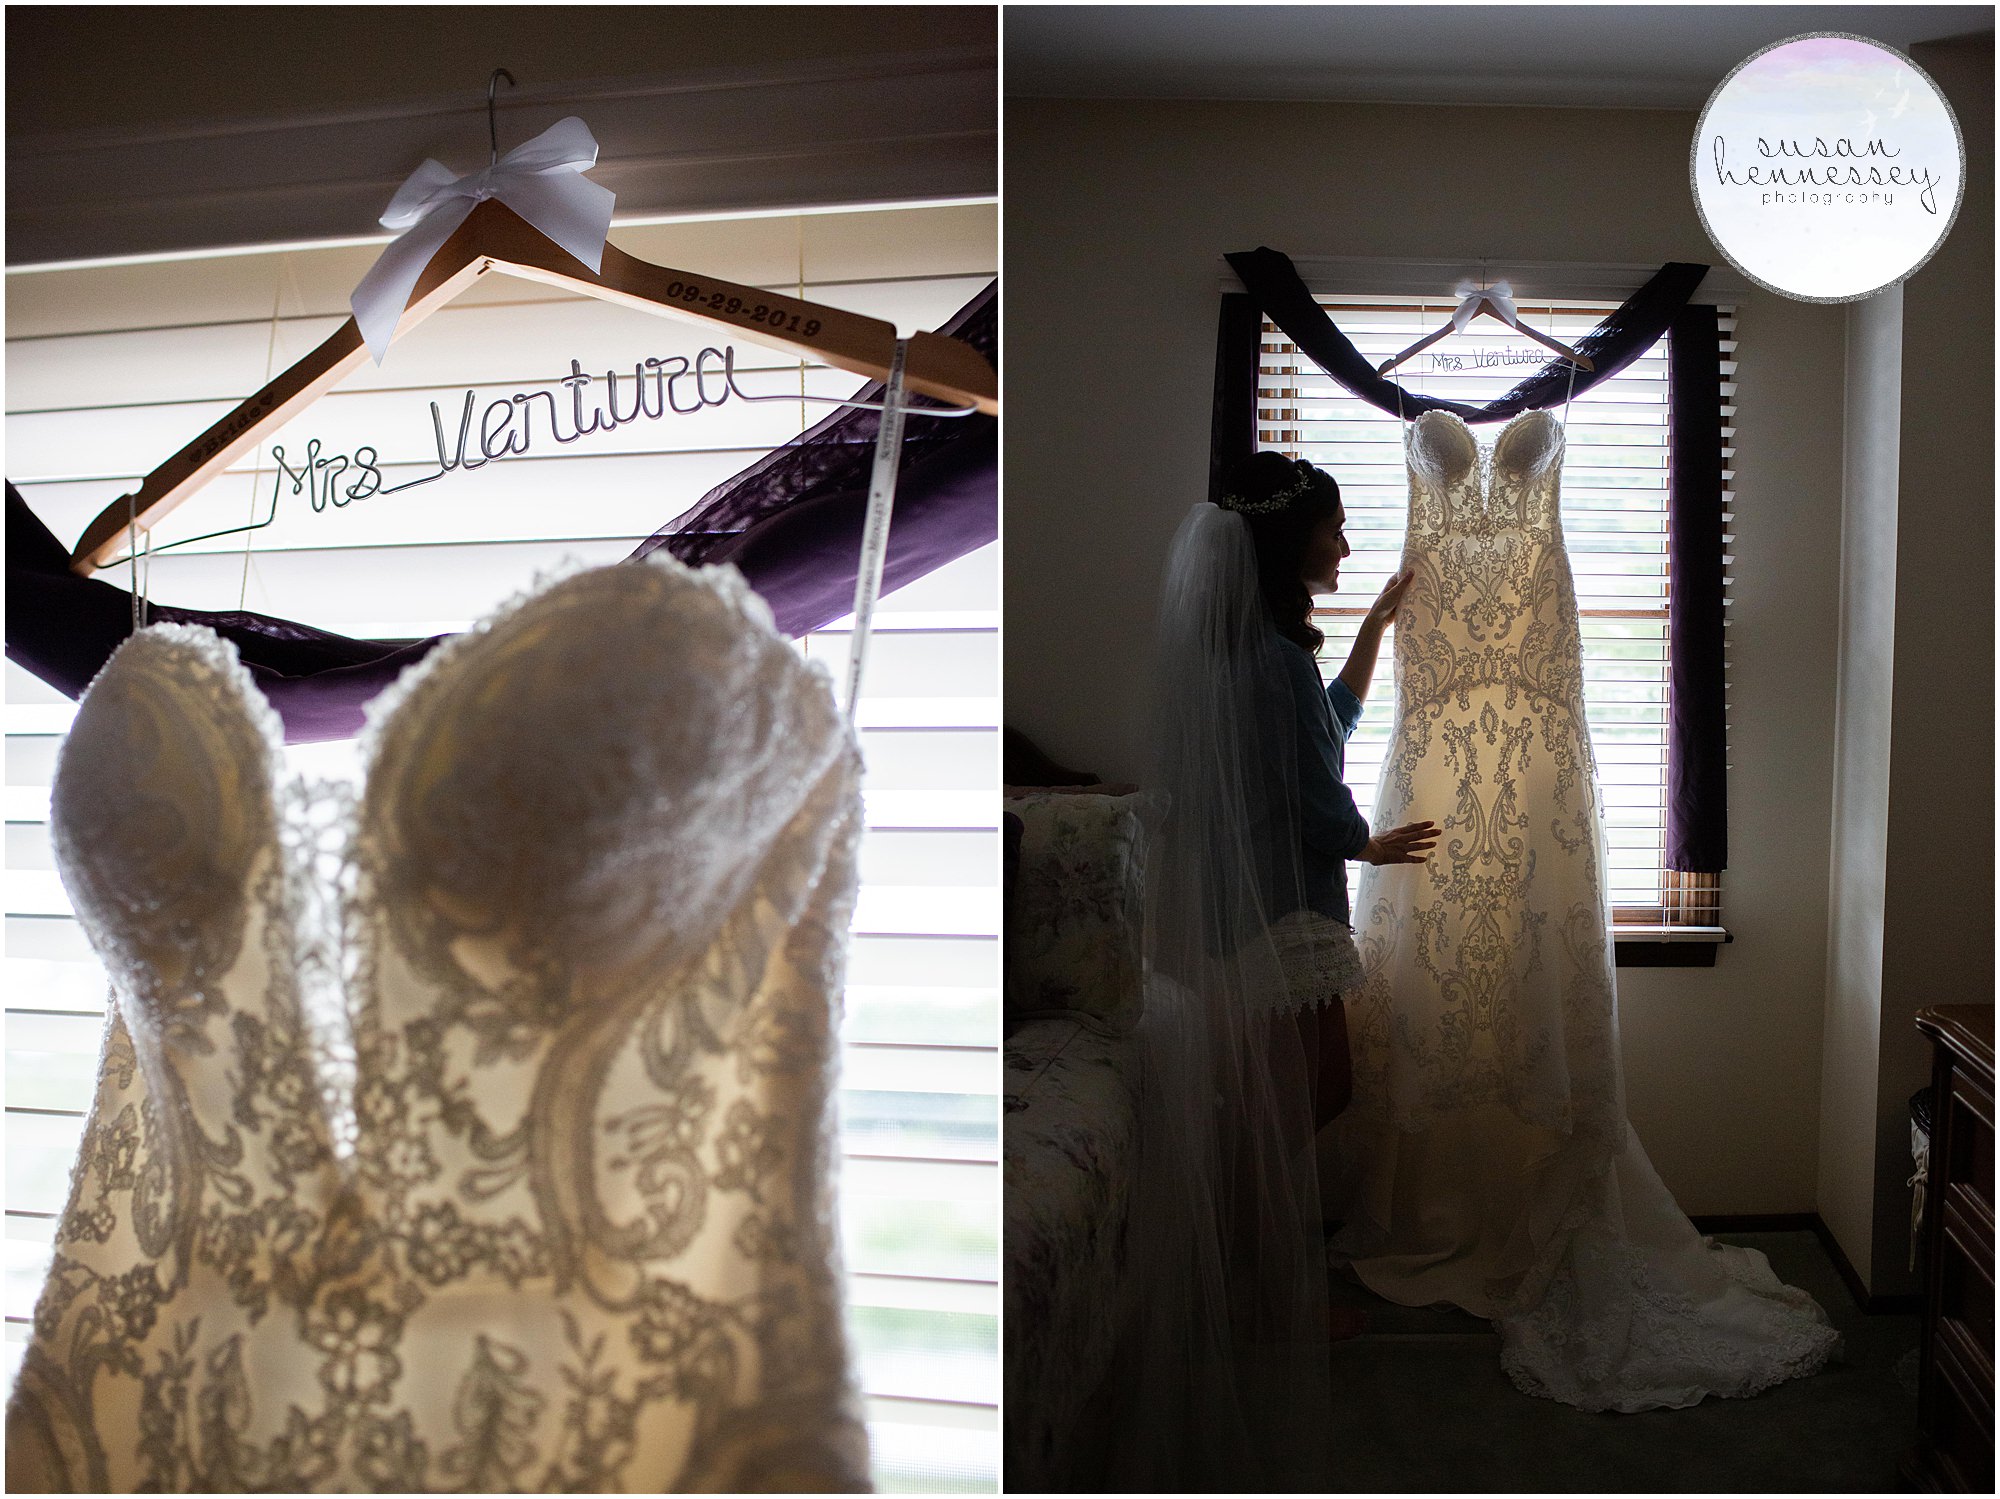 Bride's wedding gown hanging in window.